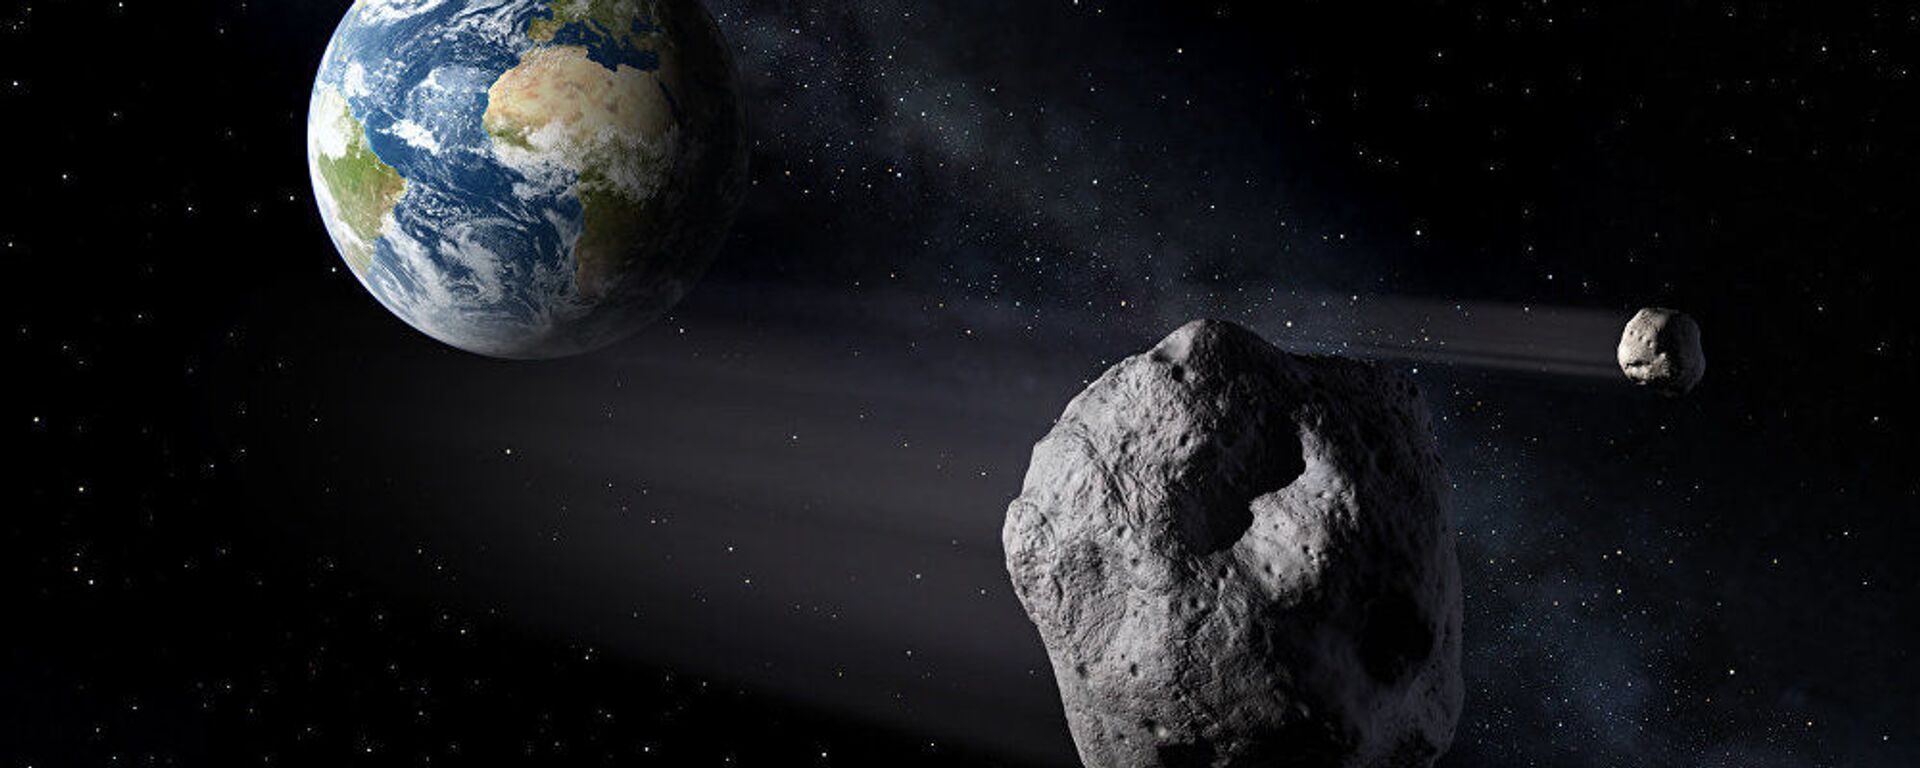 Asteroid v kosmose na fone zemli. Illyustrativnoe foto - Sputnik O‘zbekiston, 1920, 11.01.2021